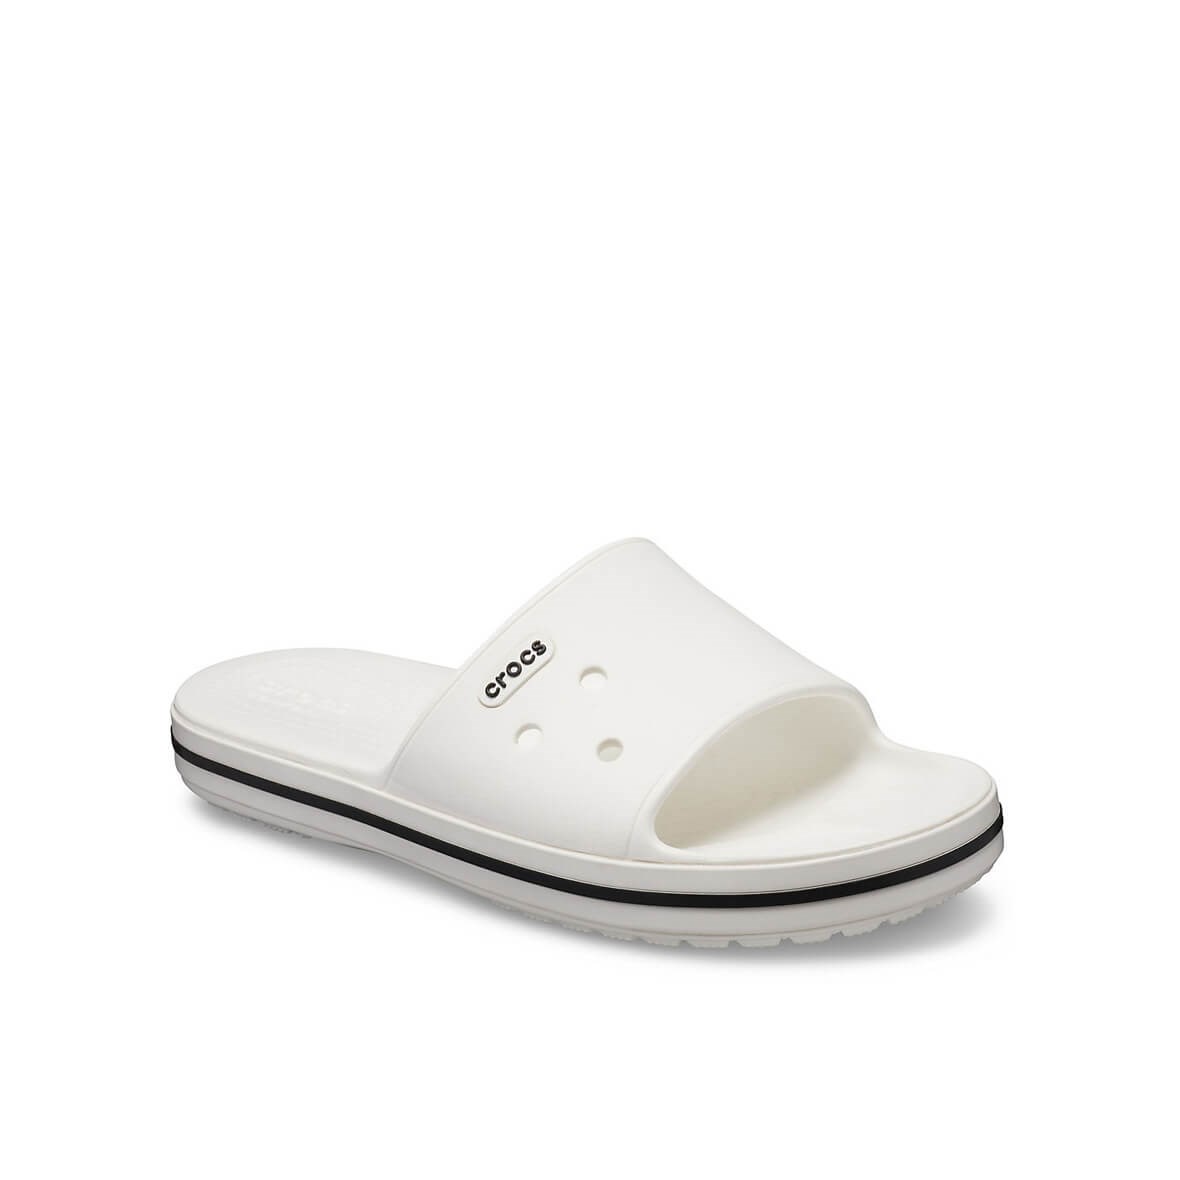 Crocs Crocband III Slide White/Black (Beyaz/Siyah) Erkek Terlik & Sandalet